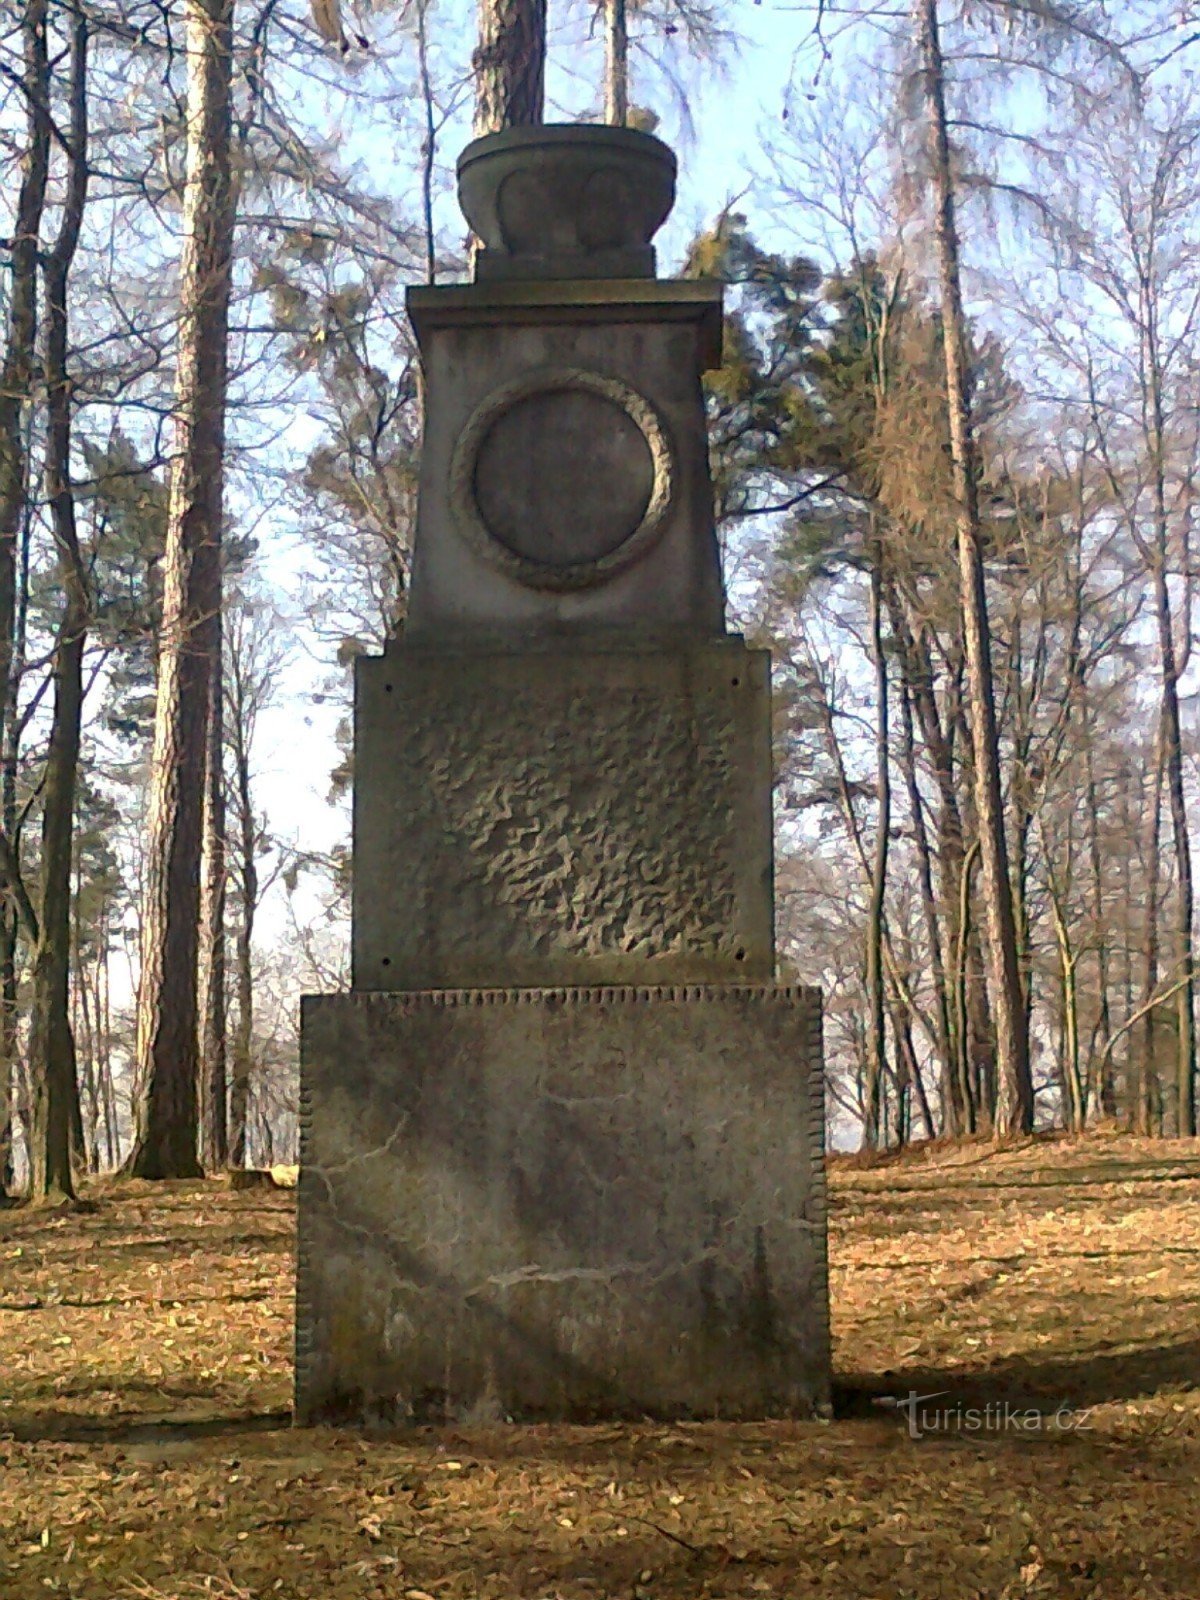 Đài tưởng niệm những người đã chết trong Chiến tranh thế giới thứ nhất được xây dựng trên cái gọi là Křížová hora